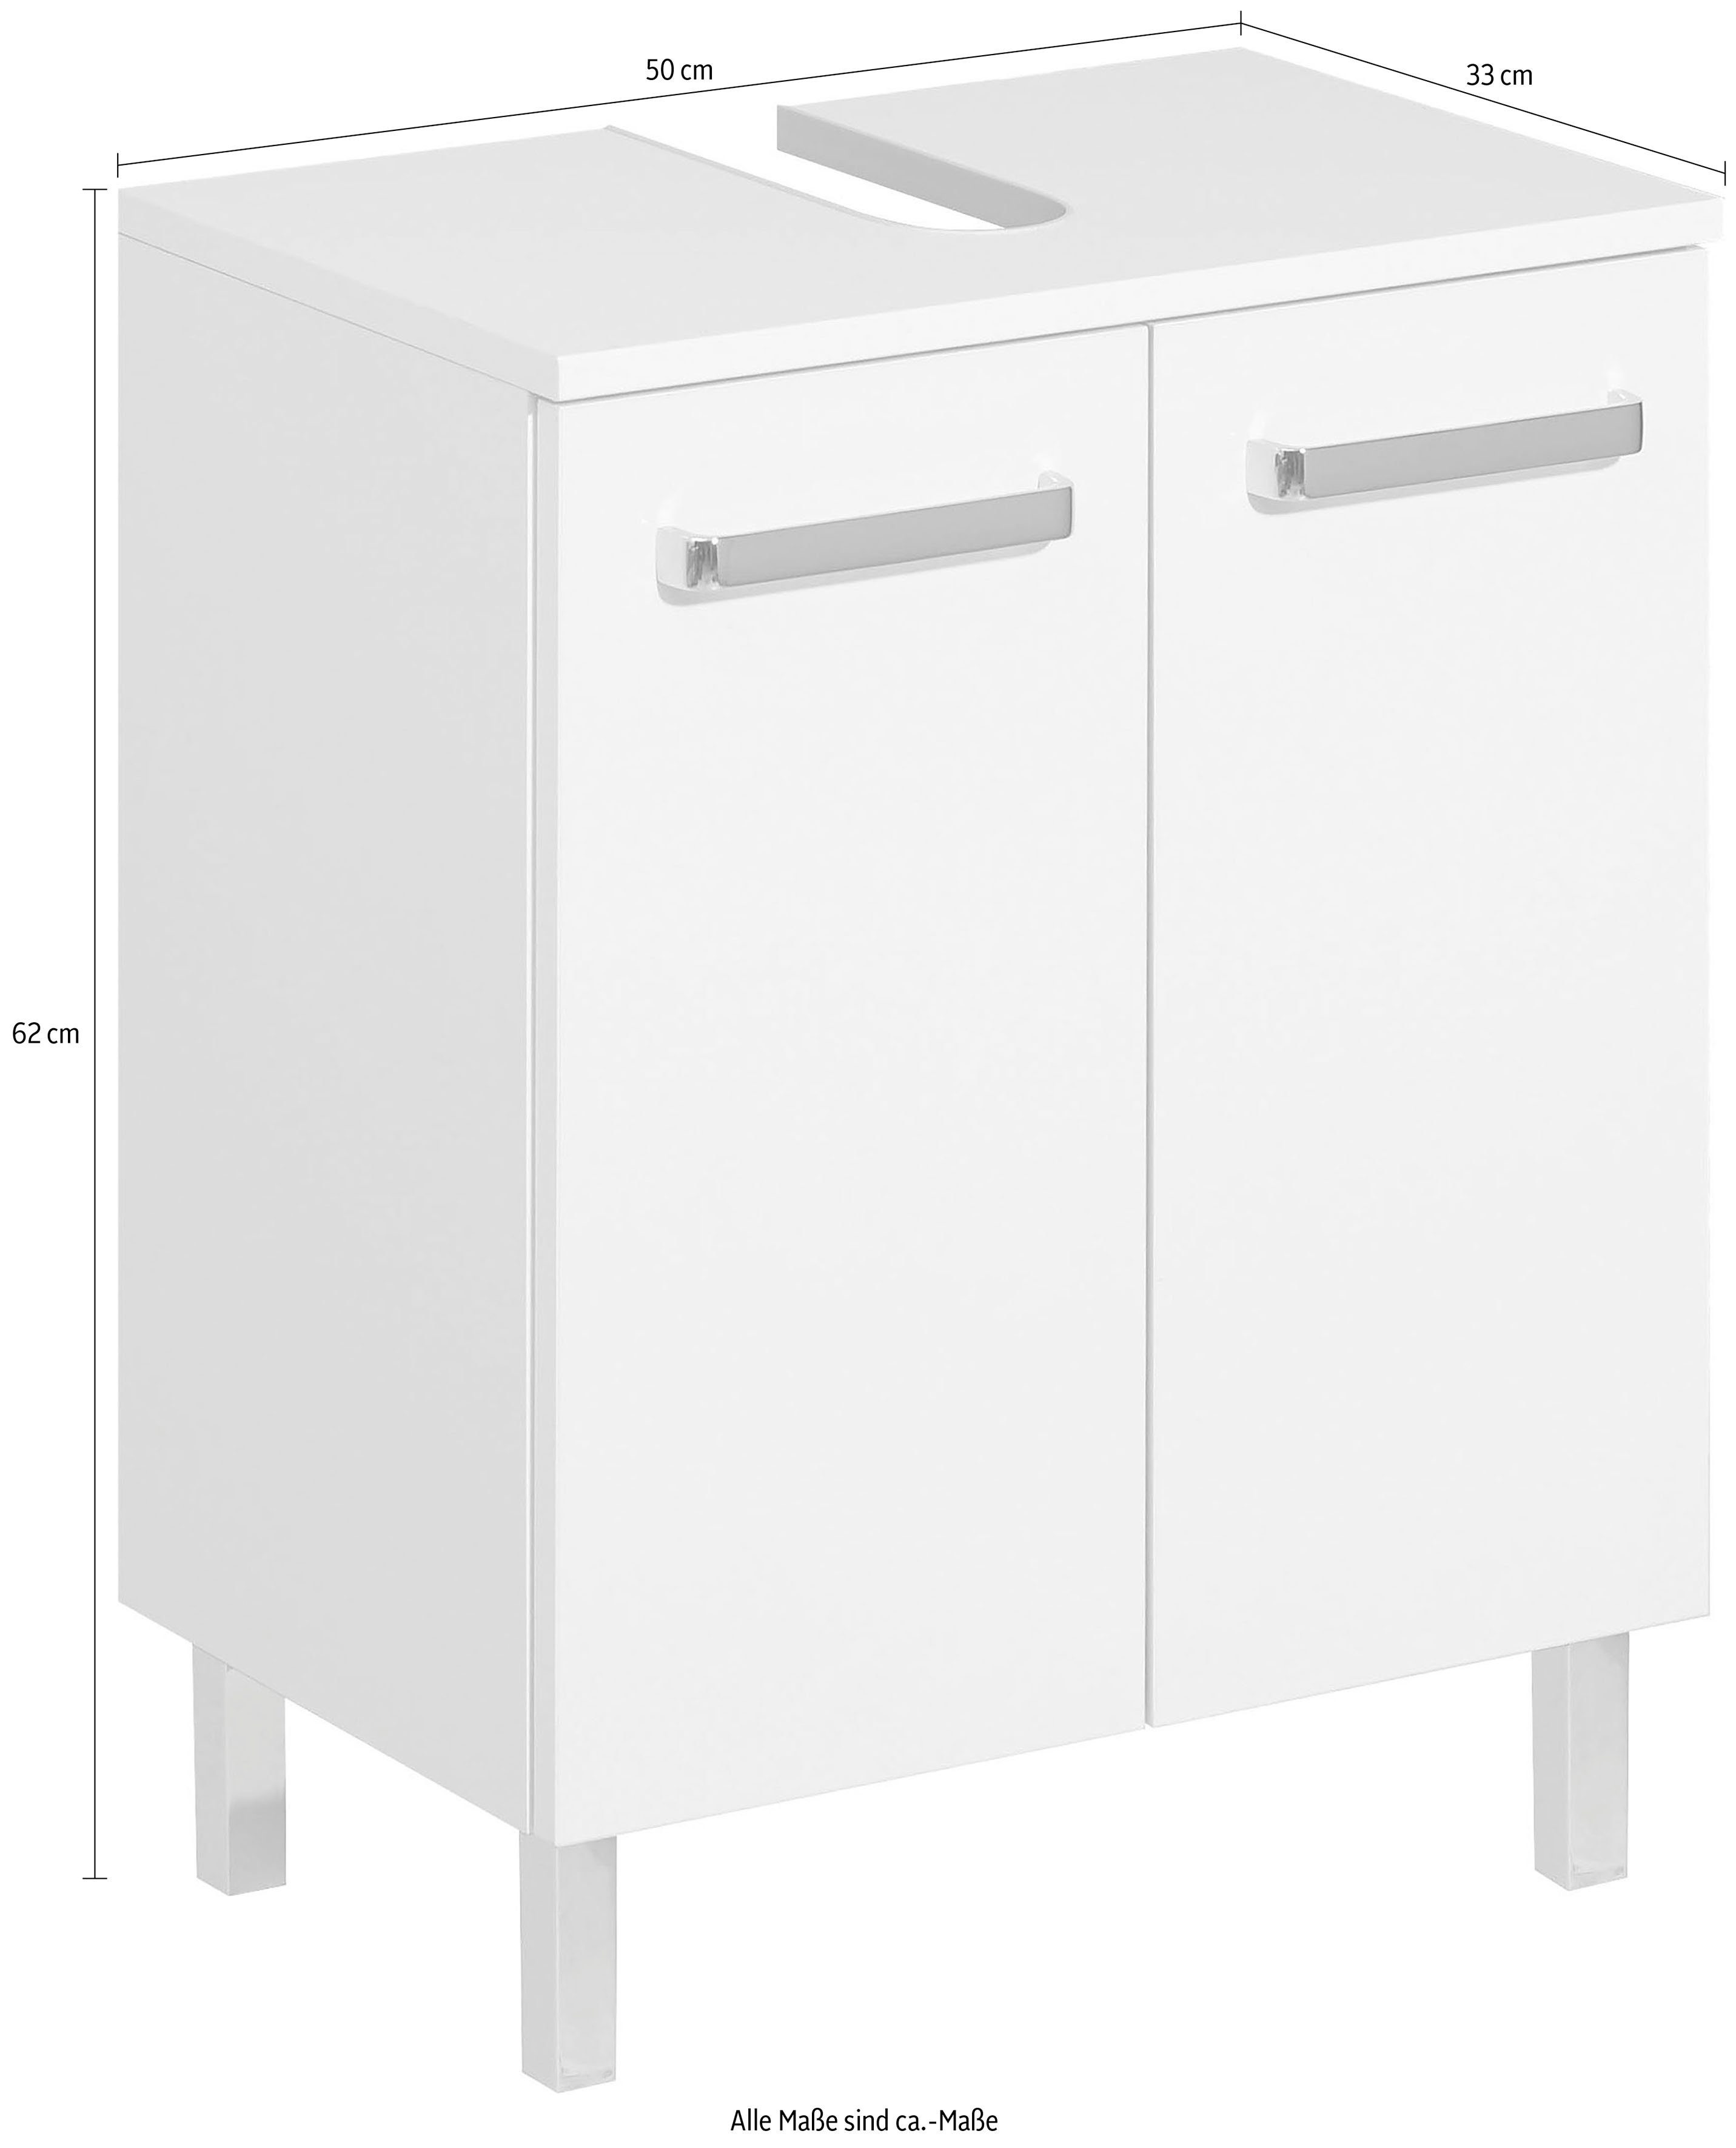 50 PELIPAL Quickset Waschbeckenunterschrank Badmöbel, 312 cm Breite